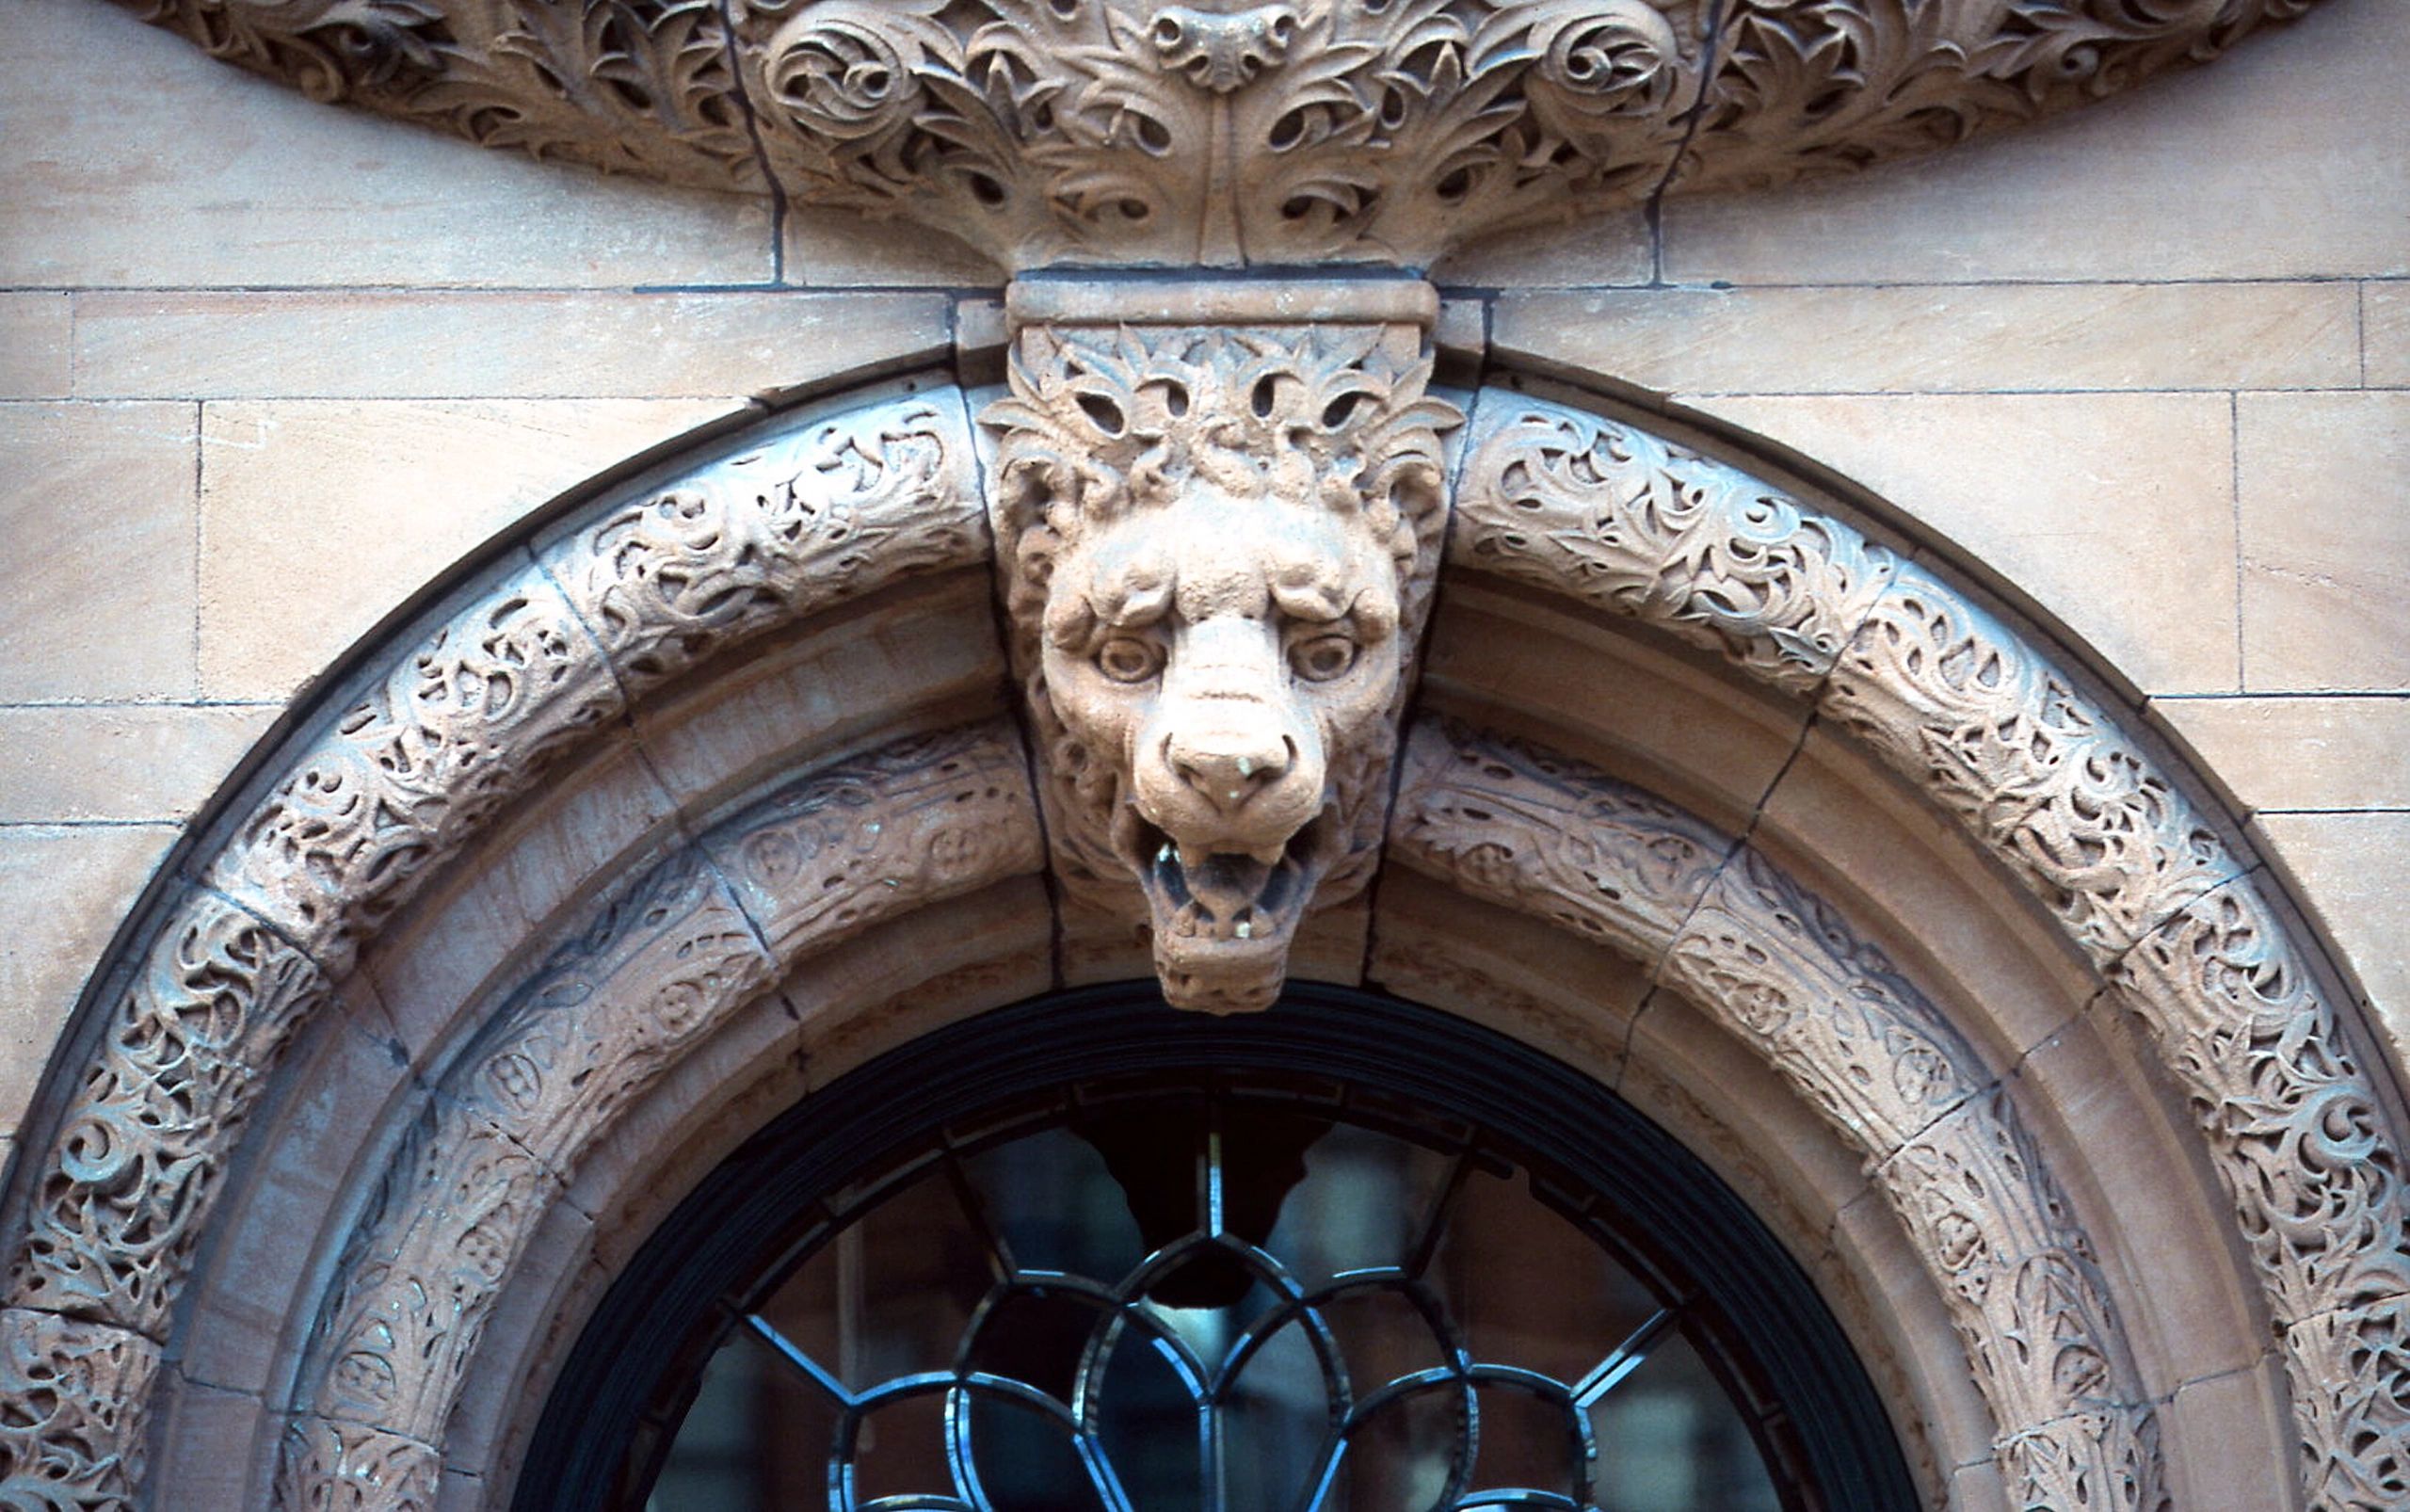 Gargoyle face in sandstone arch